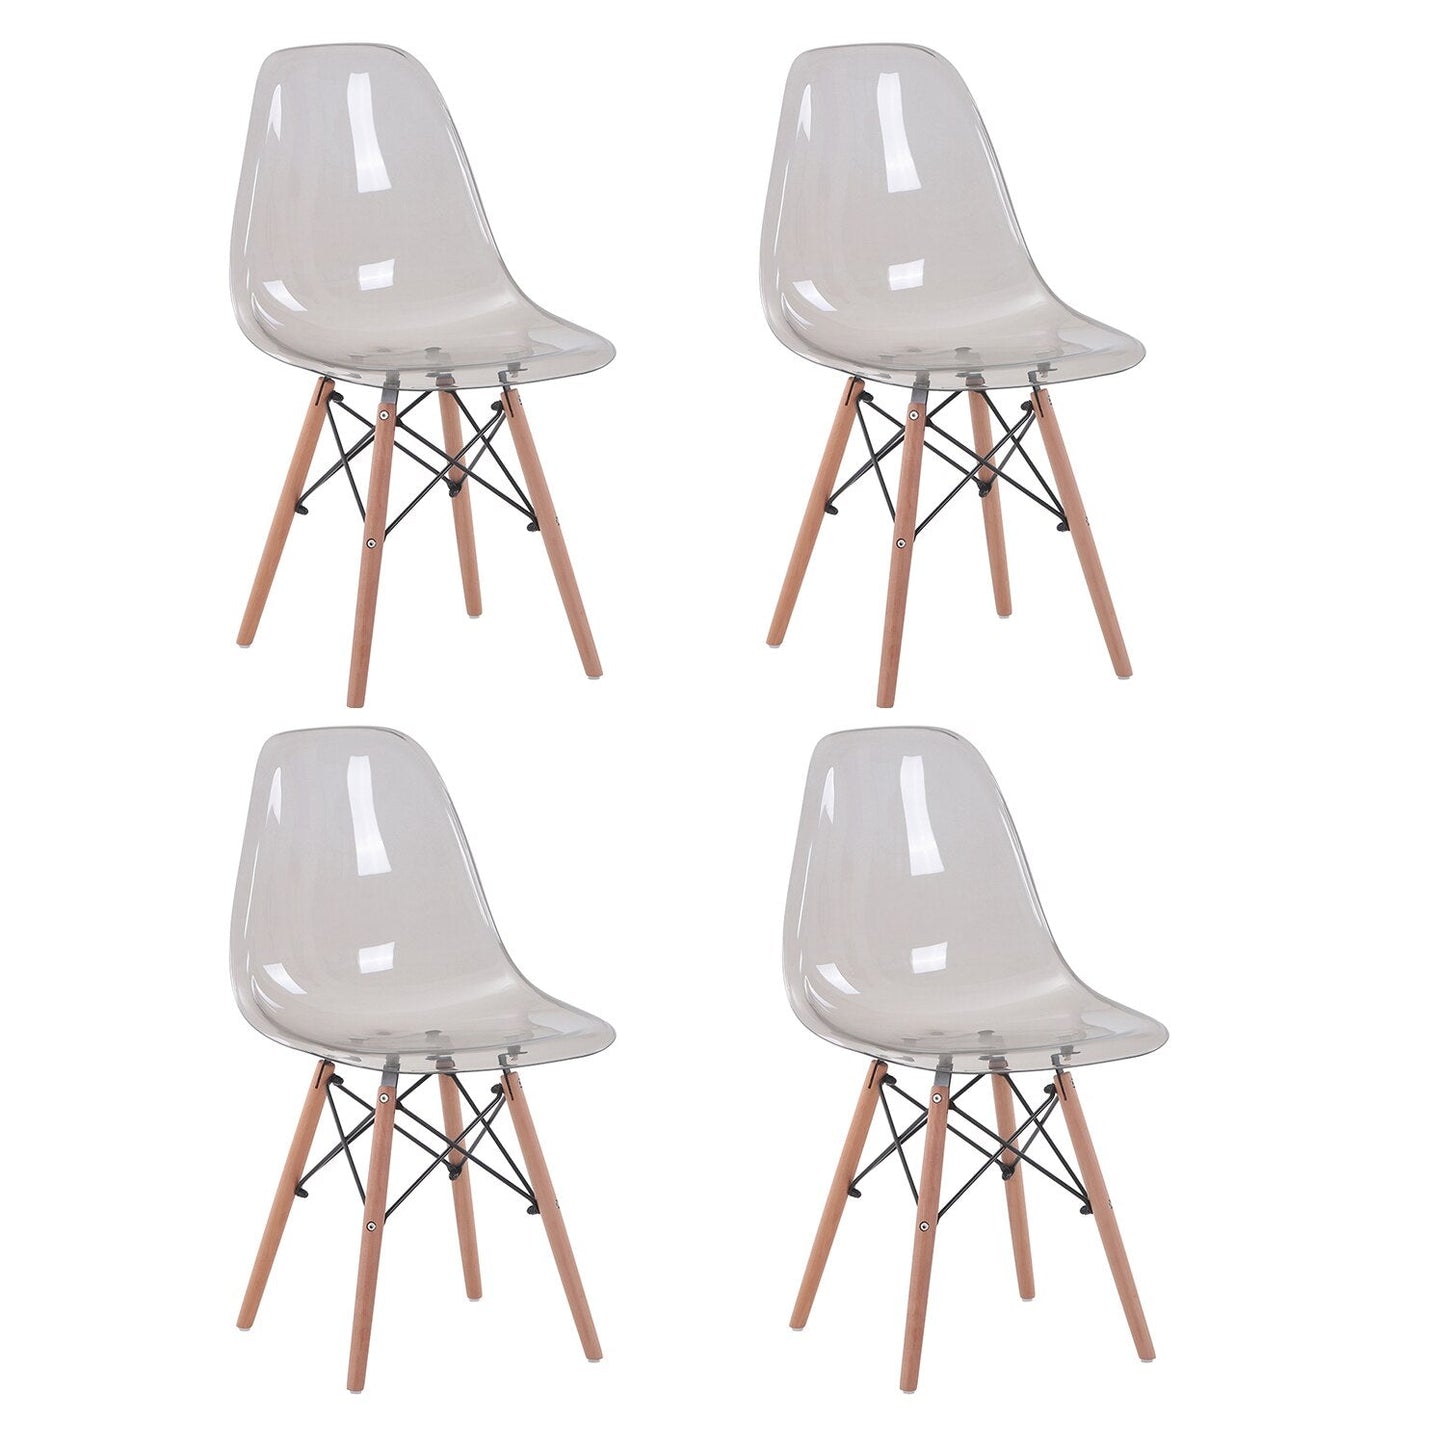 Chaises fantômes transparentes et modernes, chaises fantômes en bois massif et cristal pour événements